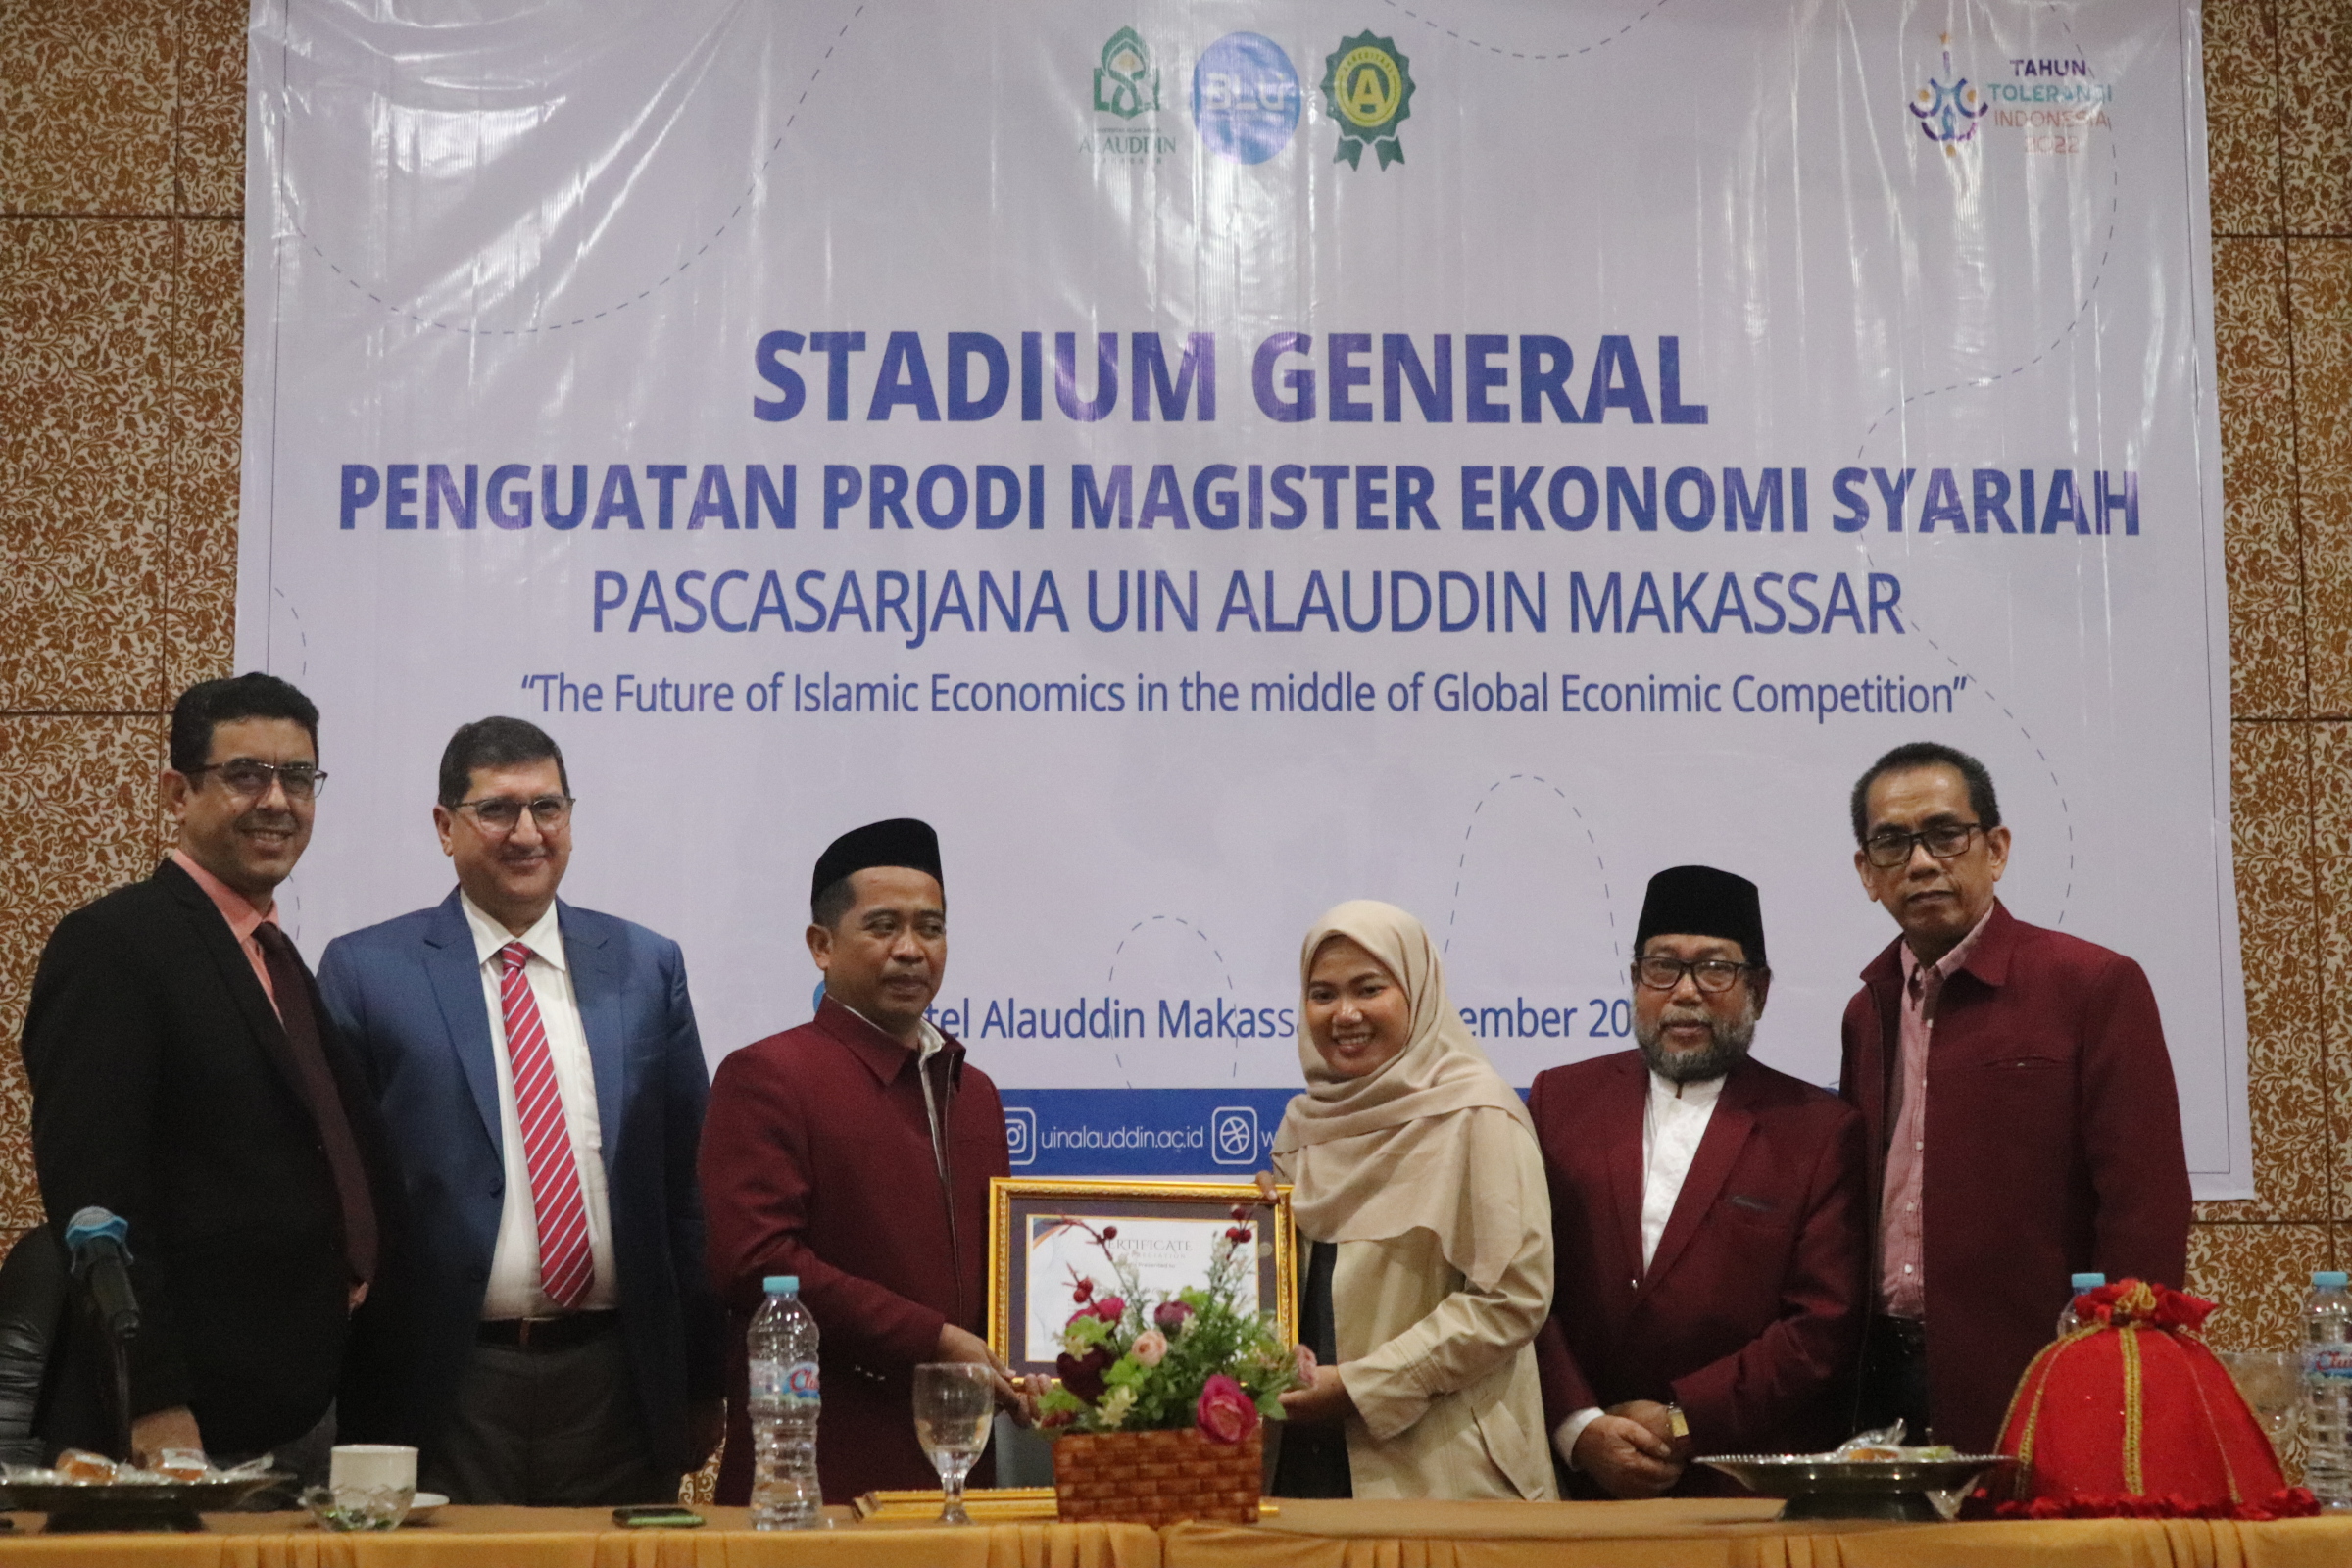 Ketua Prodi menyerahkan piagam penghargaan kepada moderator Stadium General Nur Faizah Fakhriyah Gal